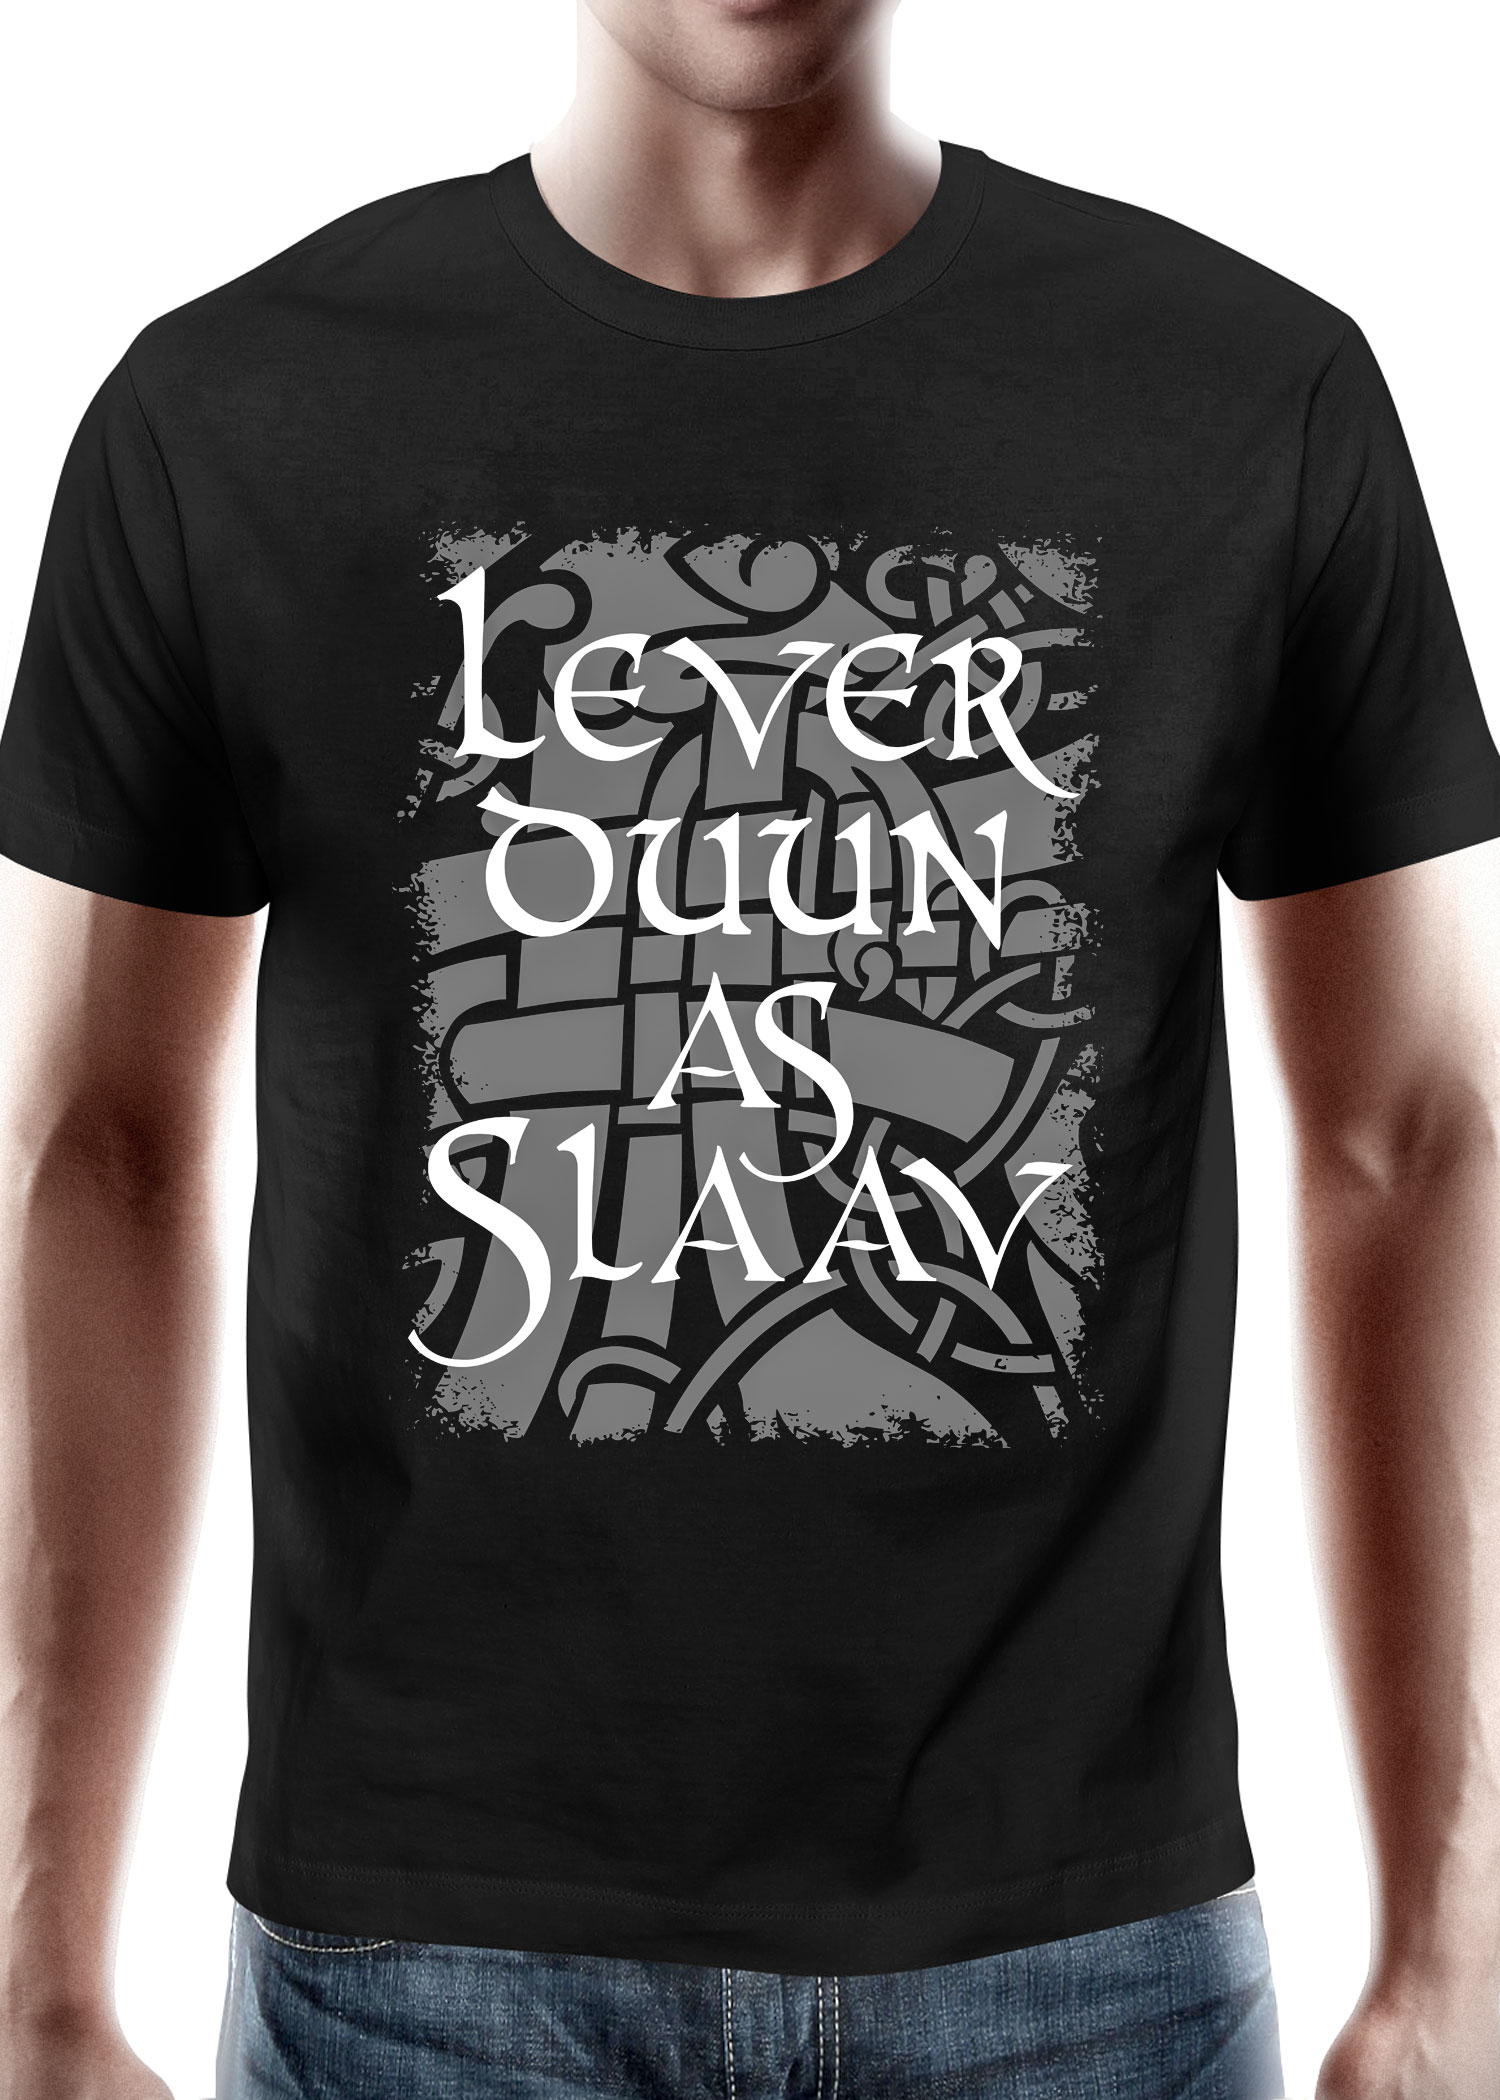 Lever Duun as Slaav - Wacken Brauerei, T-Shirt, Größe L